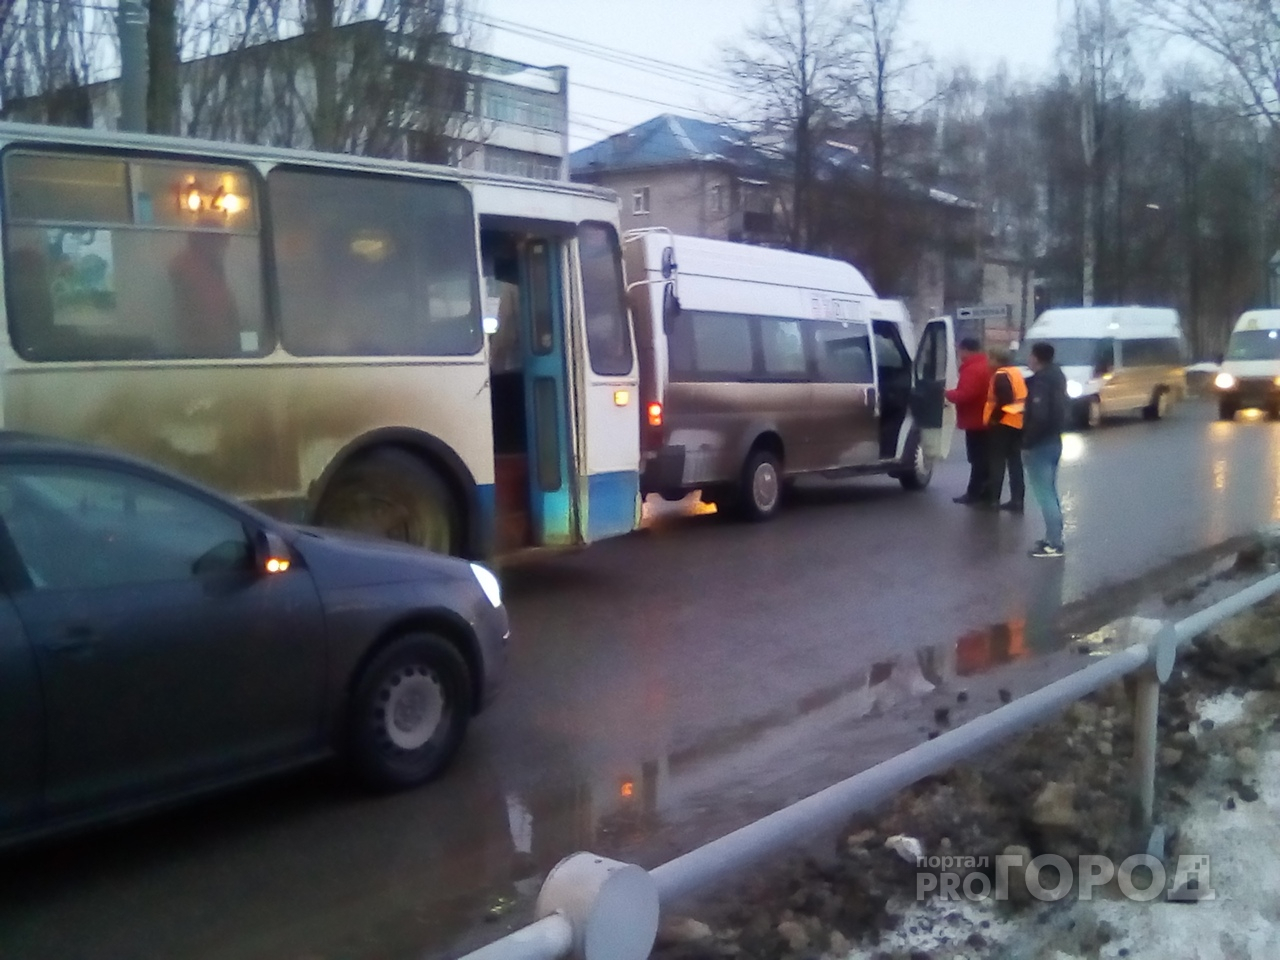 Внимание автомобилисты: В Йошкар-Оле столкновение маршрутки и троллейбуса "закупорило" улицу